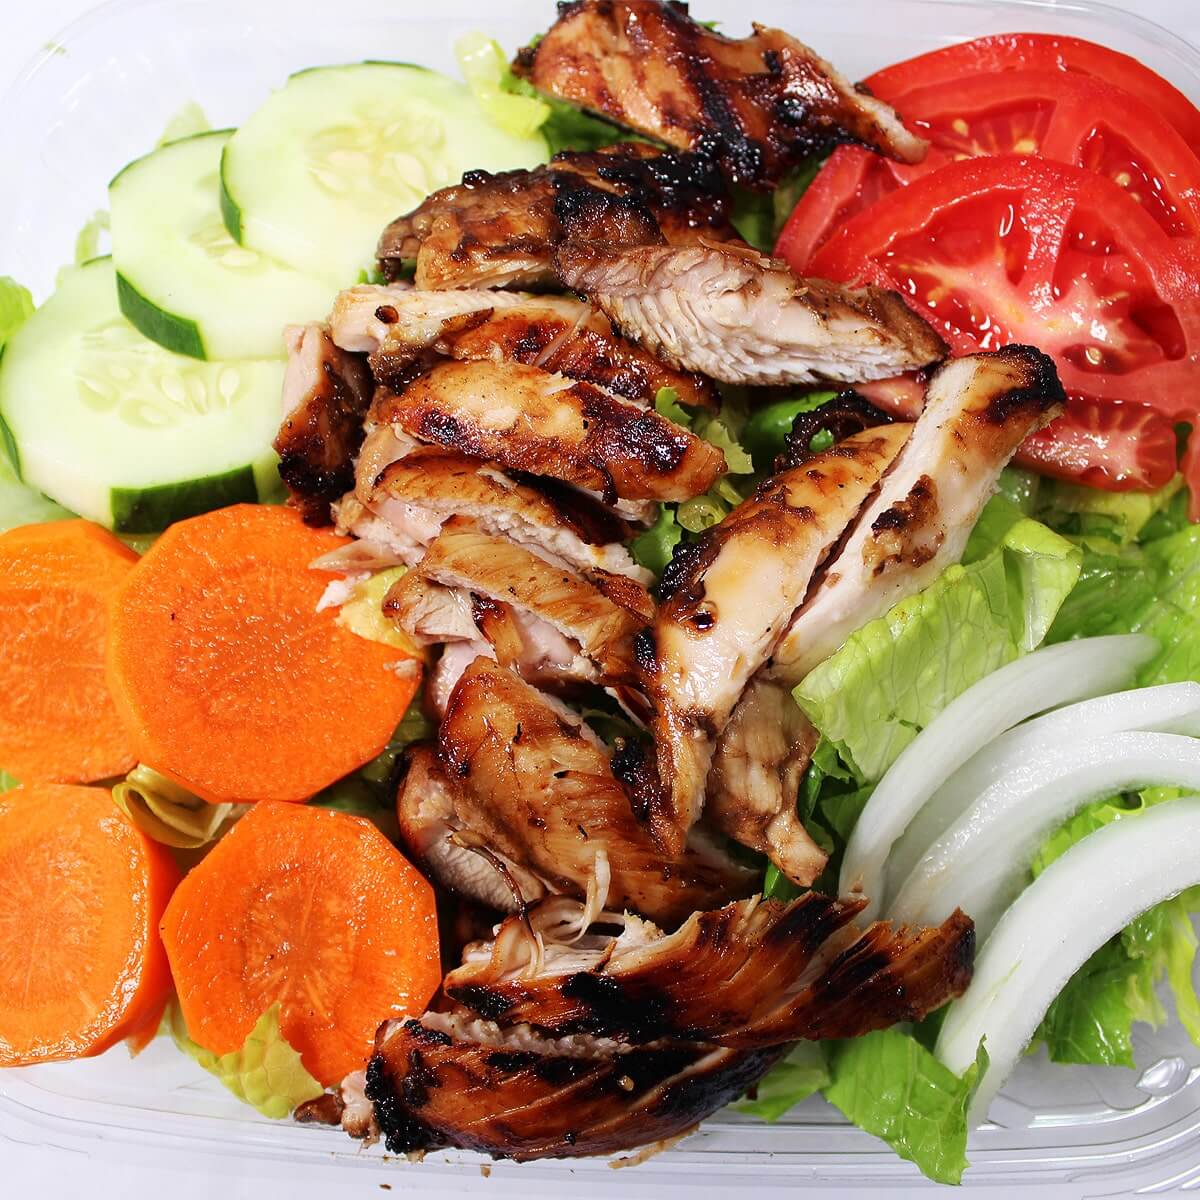 Chicken Garden Salad